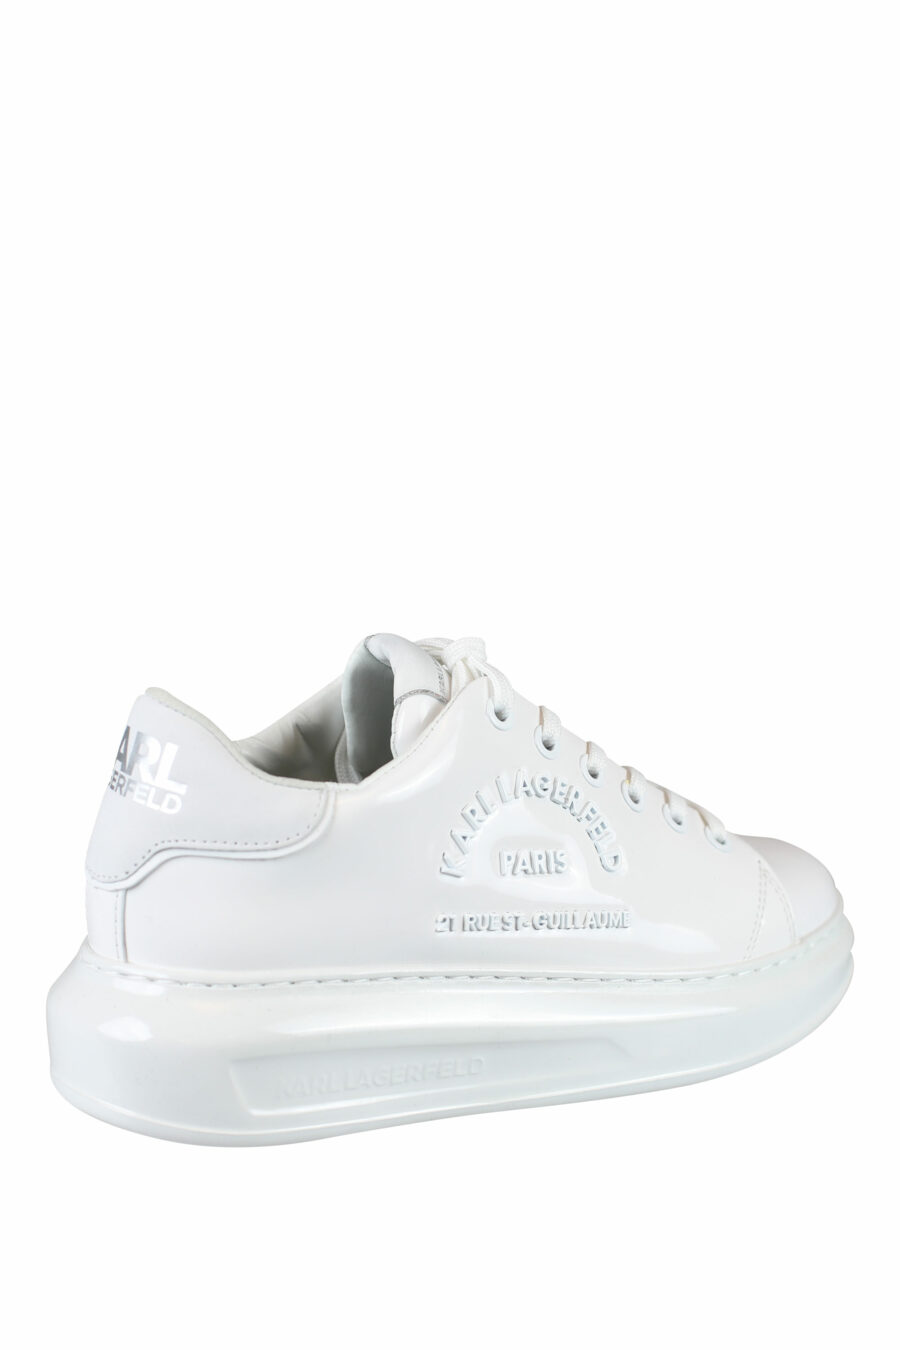 Weiße glänzende Turnschuhe mit Logo-Schriftzug "rue st guillaume" - IMG 0014 1